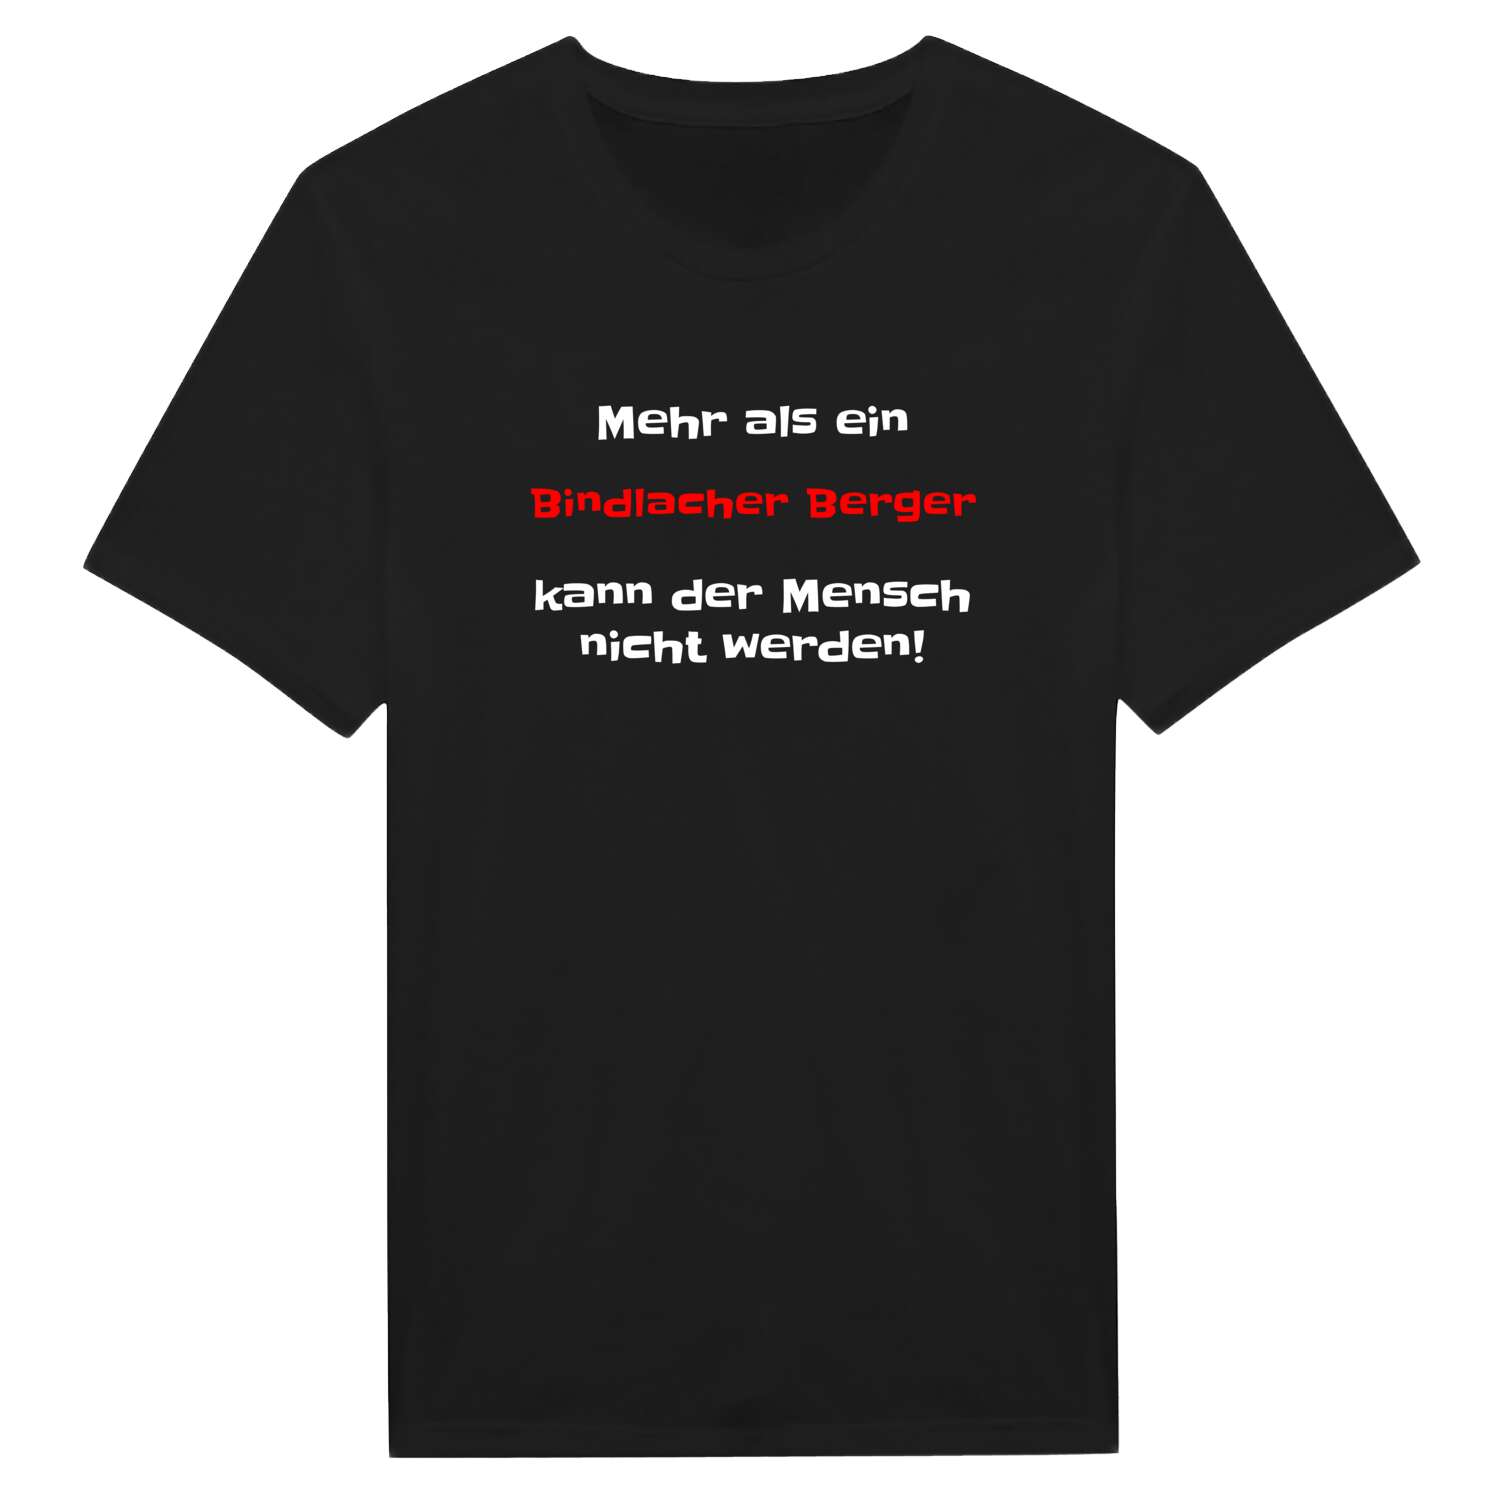 Bindlacher Berg T-Shirt »Mehr als ein«